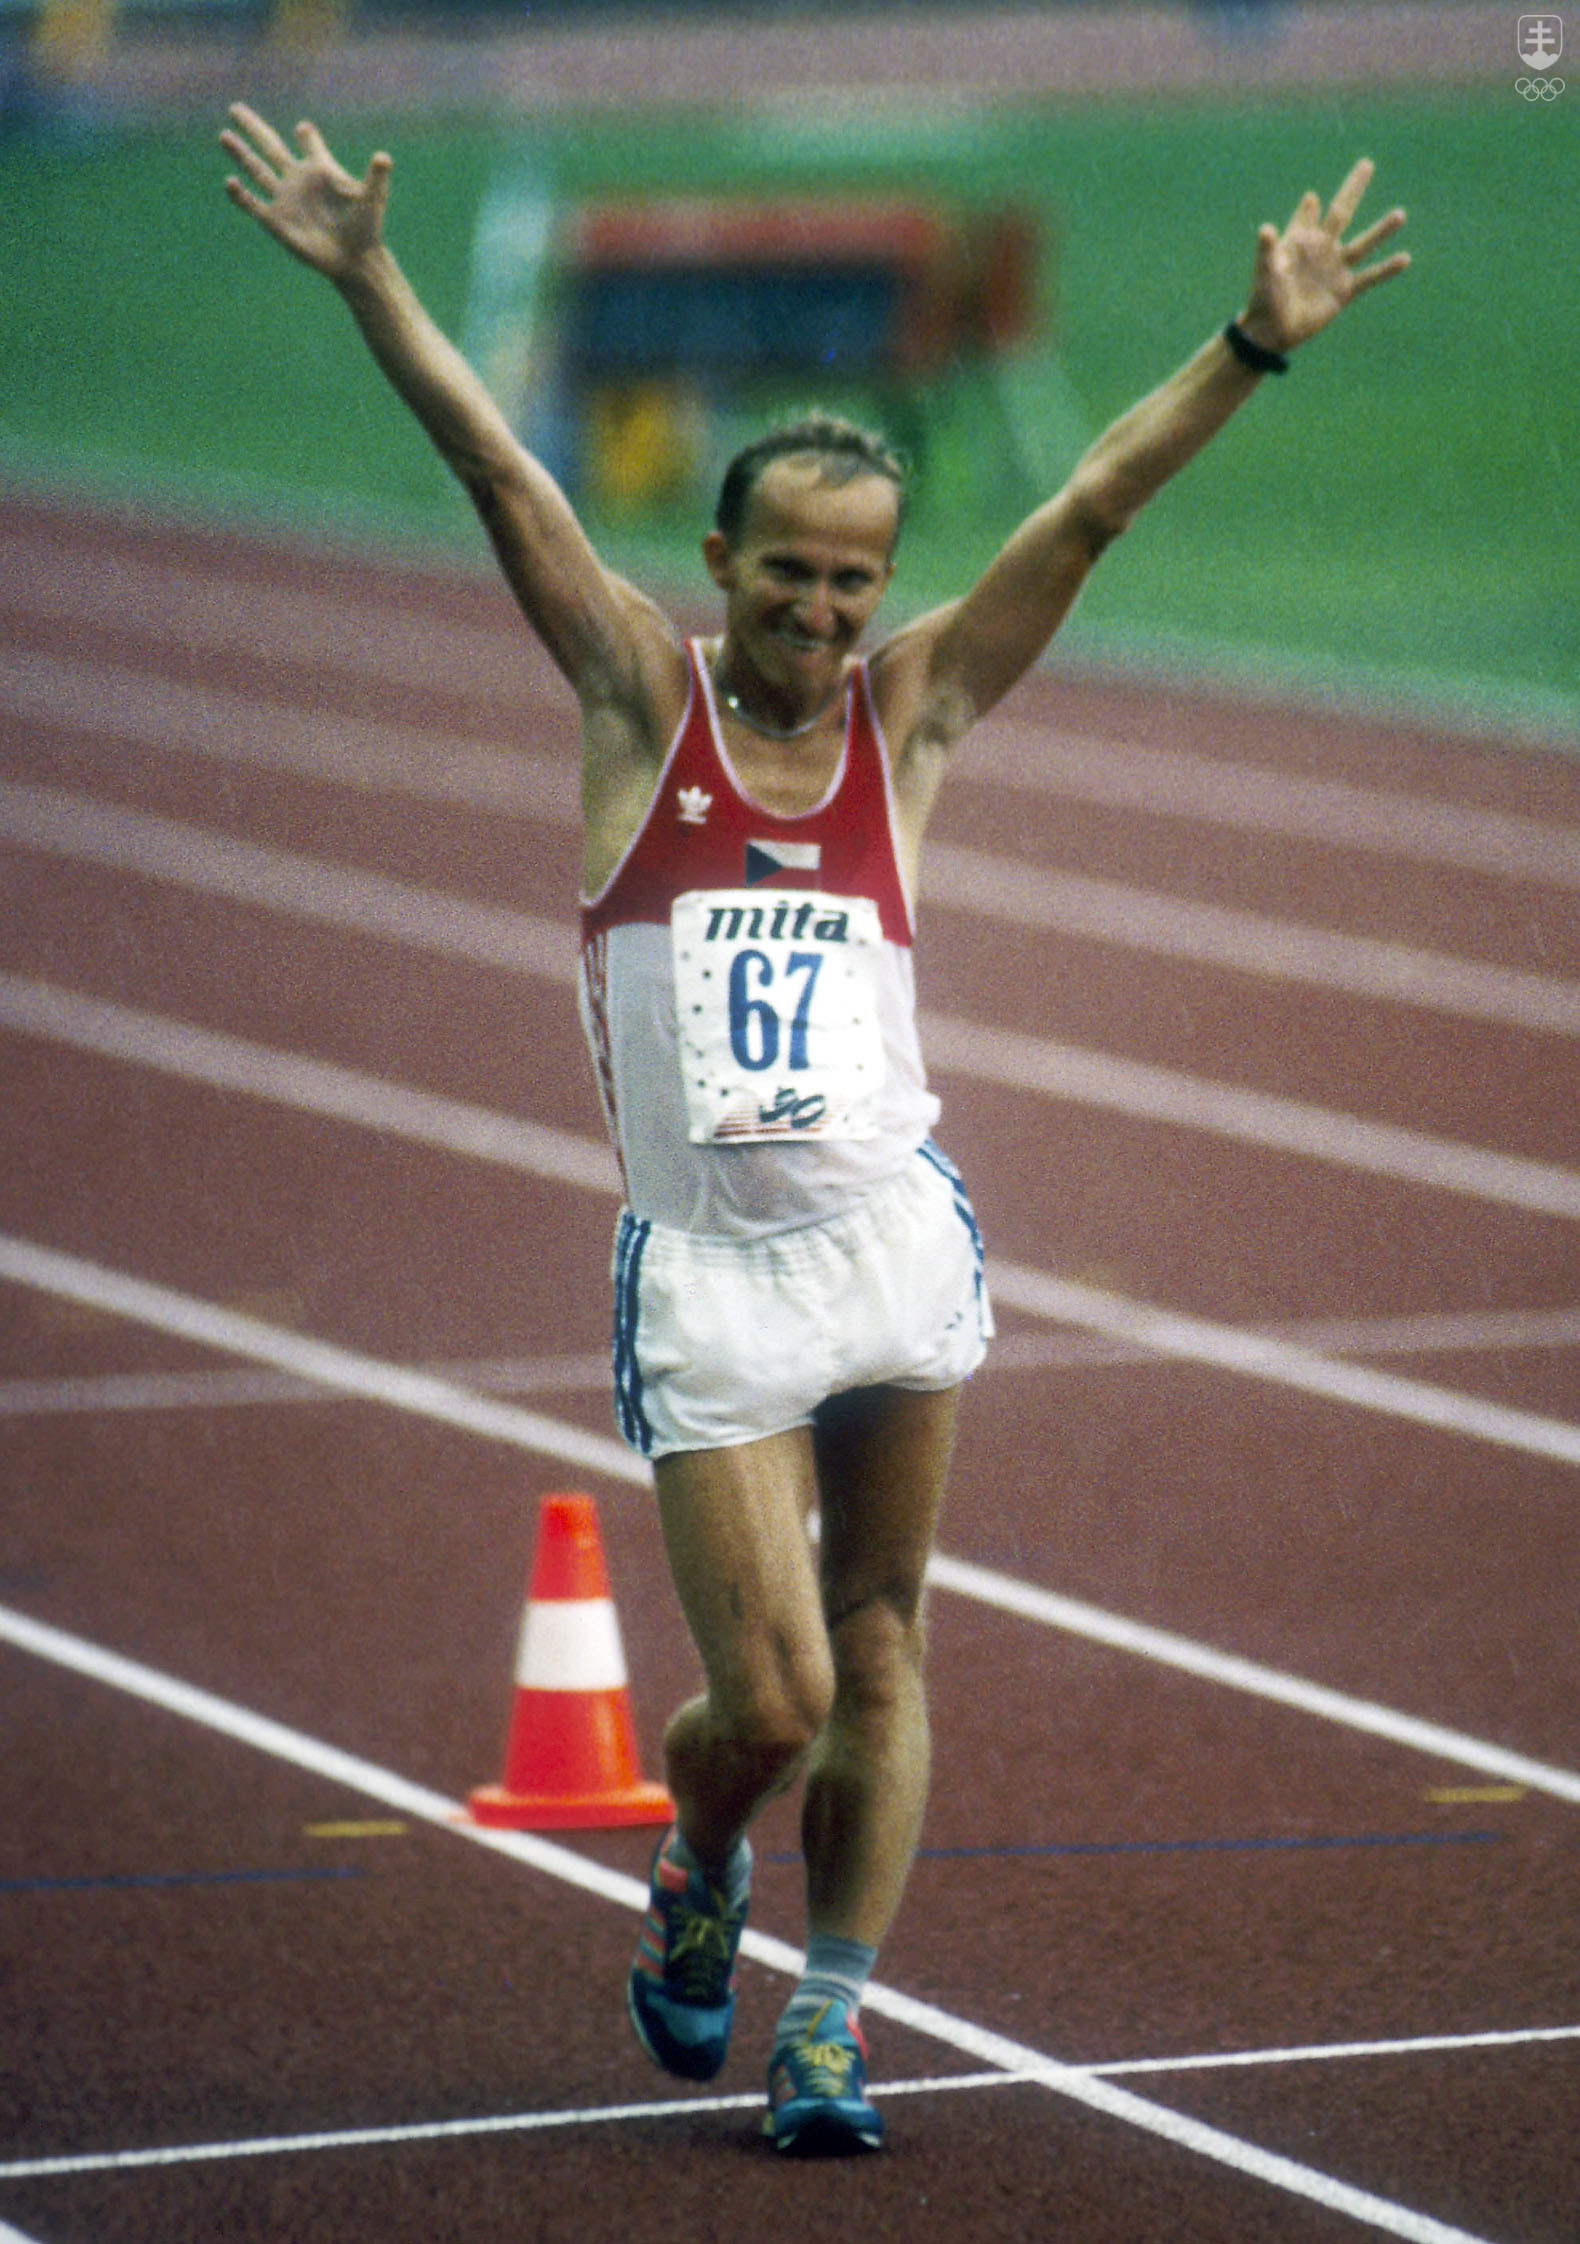 Zo svojej veľmi úspešnej chodeckej kariéry si Pavol Blažek najviac cení titul majstra Európy na 20 km zo Splitu v roku 1990.